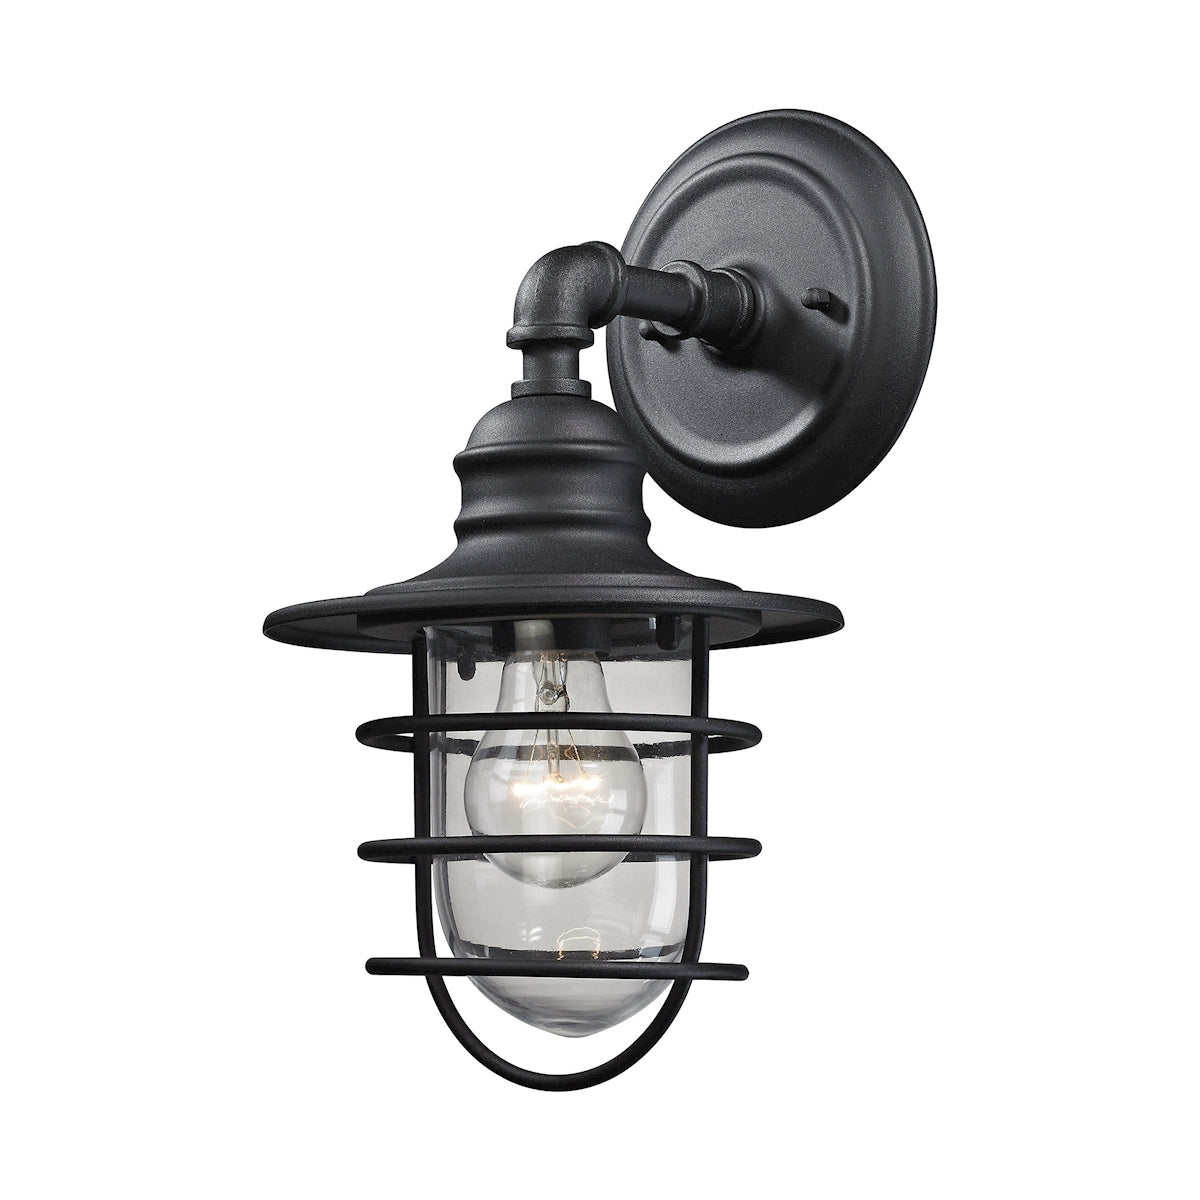 ELK Lighting 45212/1 Vandon 1-Light Outdoor Wall Lamp in Textured Matte Black